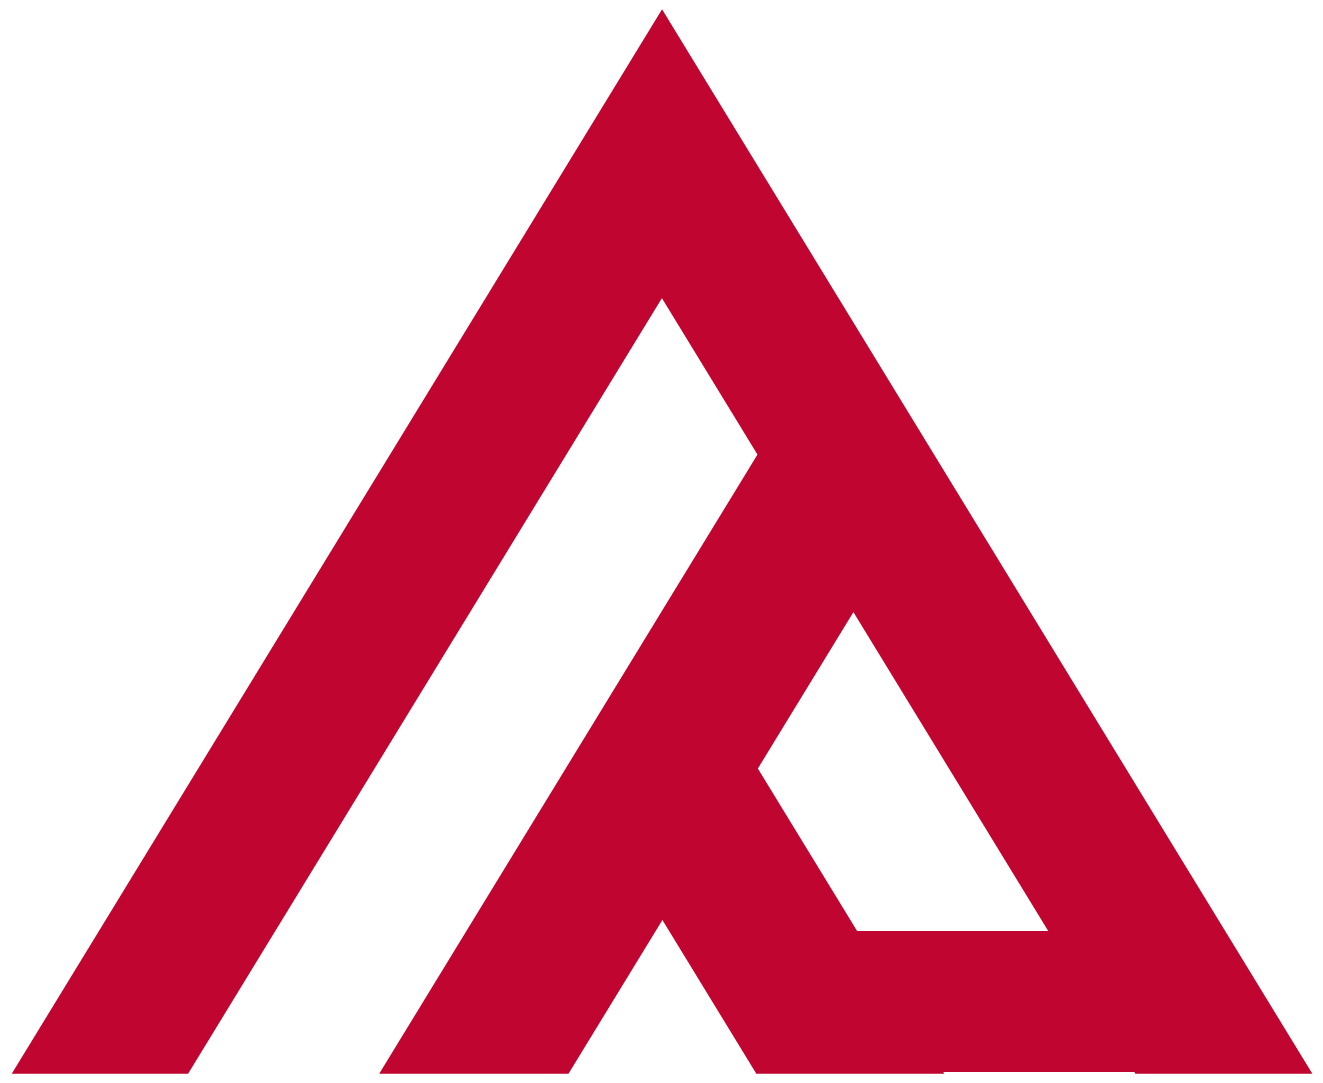 Amateur Professional Logo